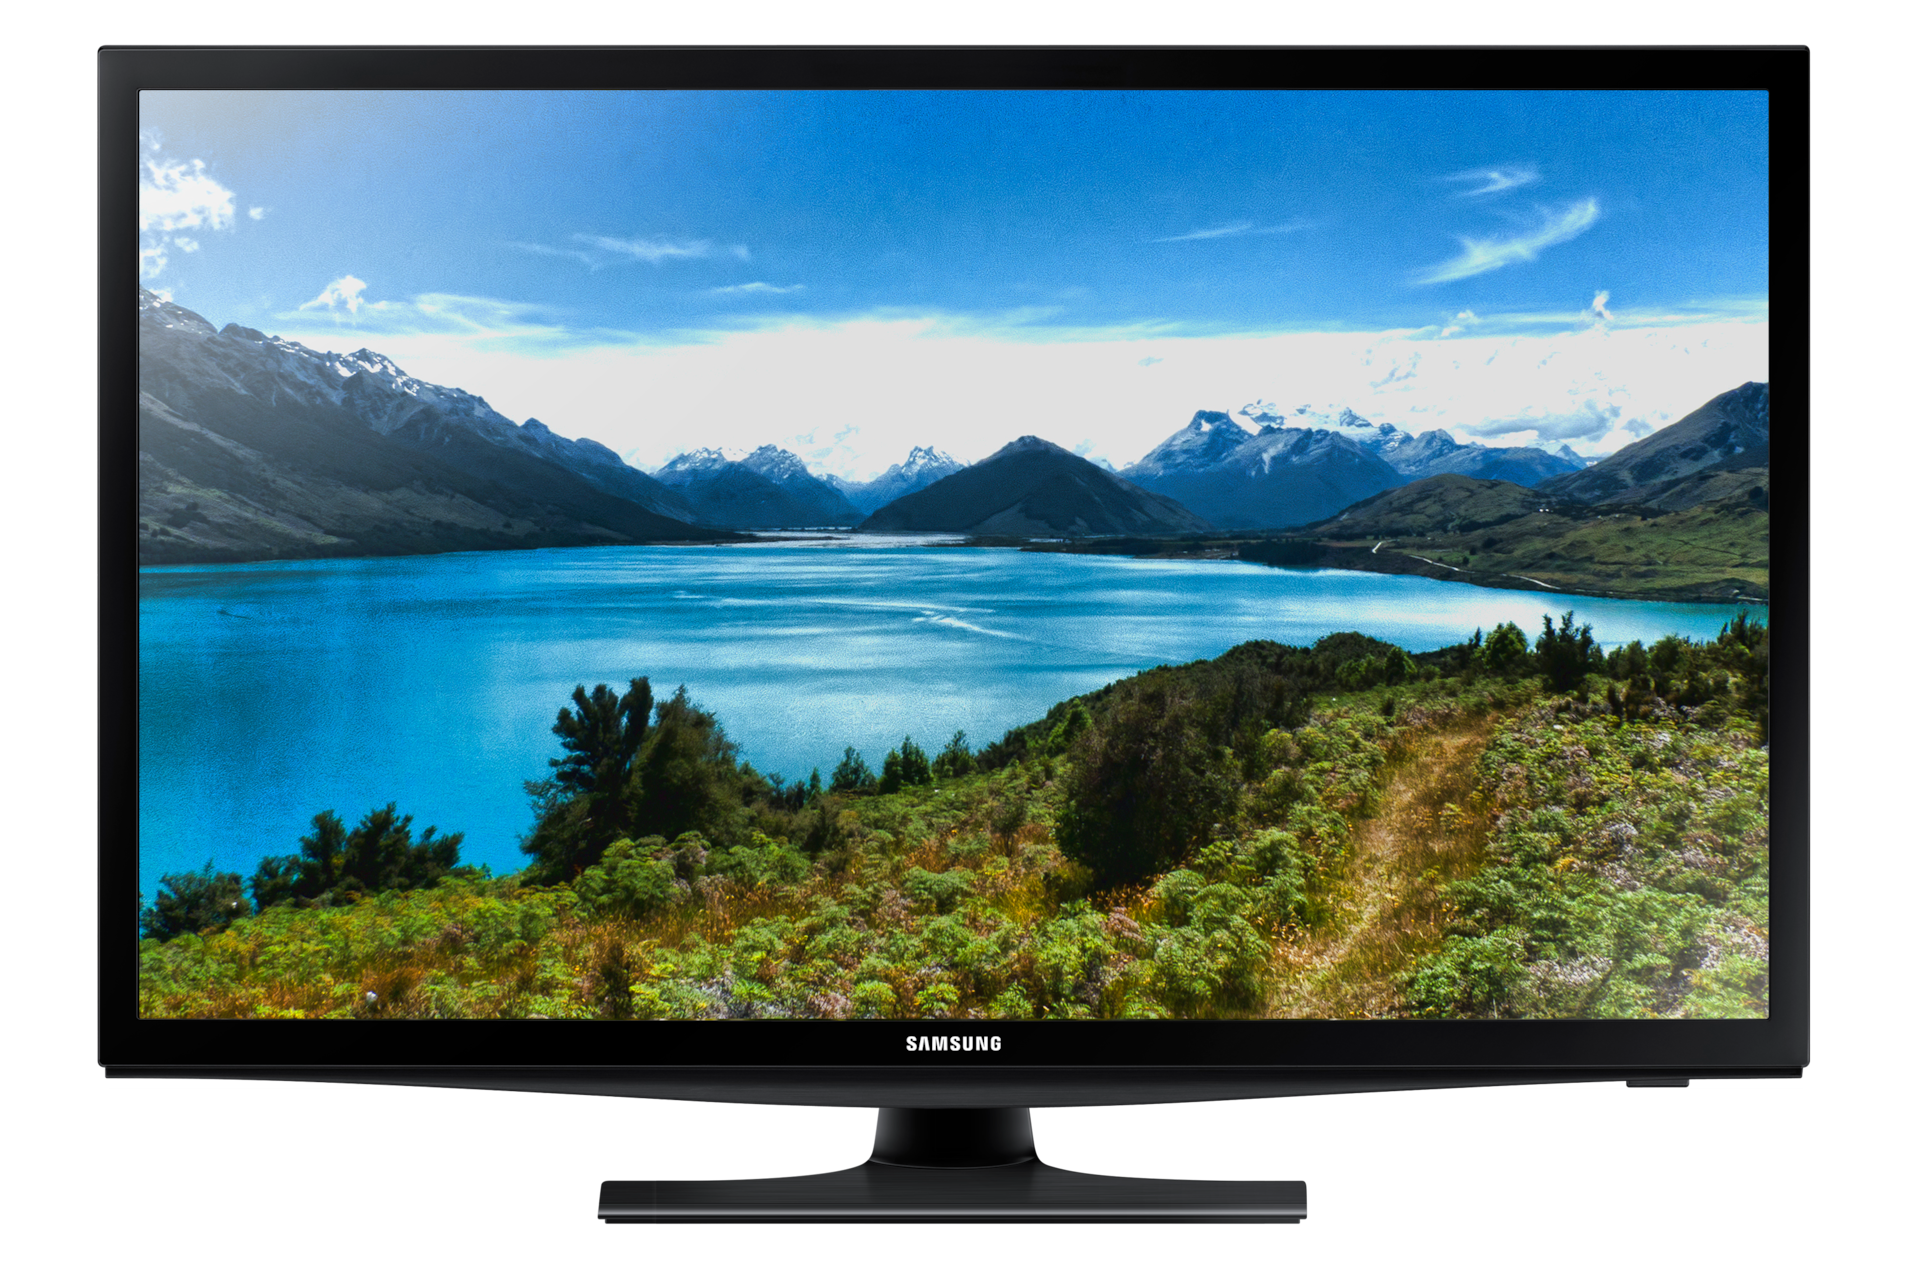 Ofertas Televisores Smart TV hasta 28 pulgadas - Mejor Precio Online